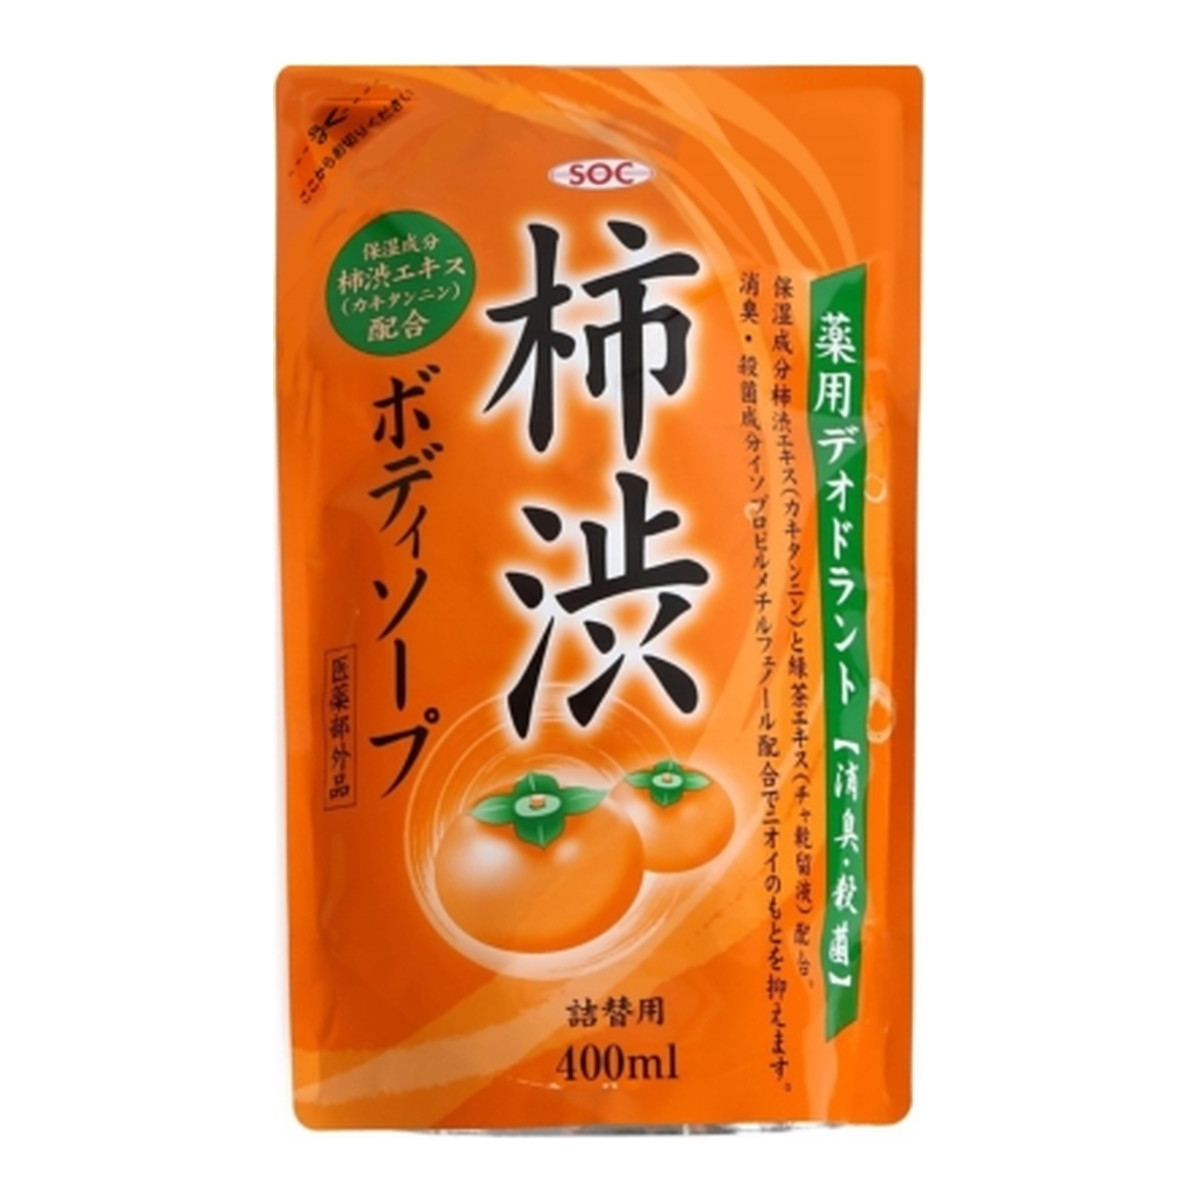 渋谷油脂 SOC 薬用 柿渋 ボディソープ 詰替用 400ml